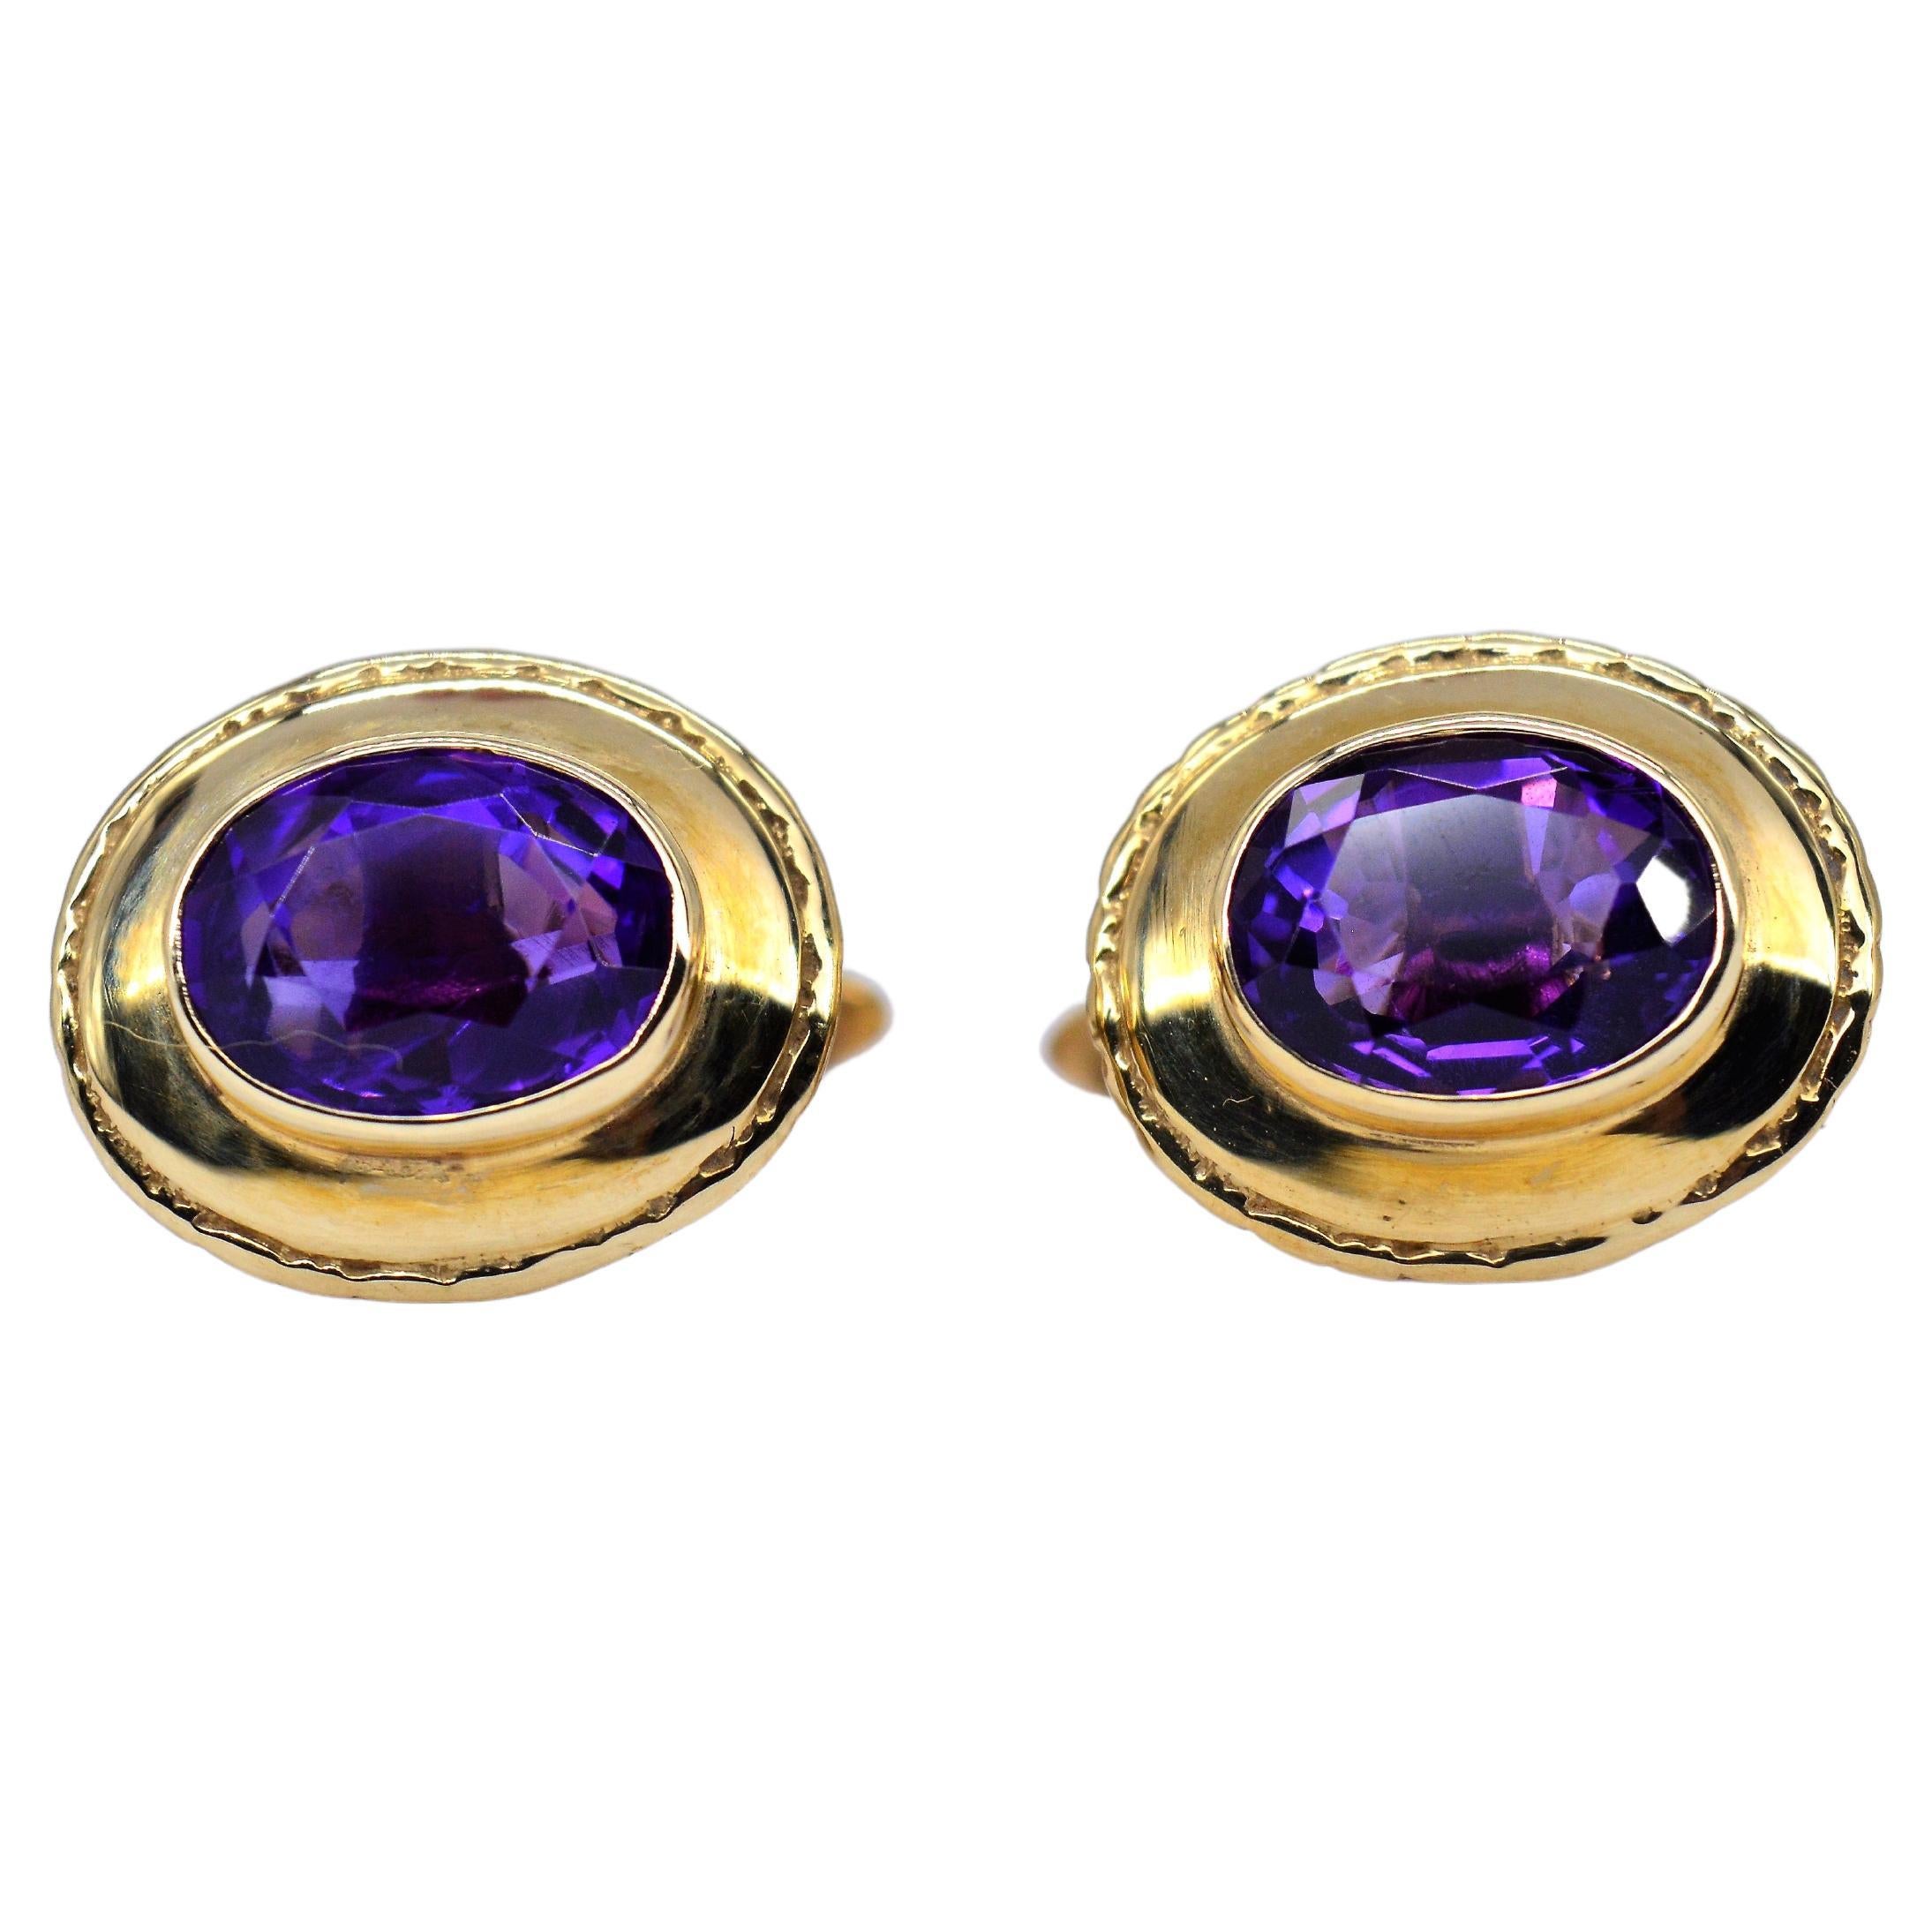 Boutons de manchette de luxe vintage en or 9 carats avec améthyste violette, fantaisie Art déco